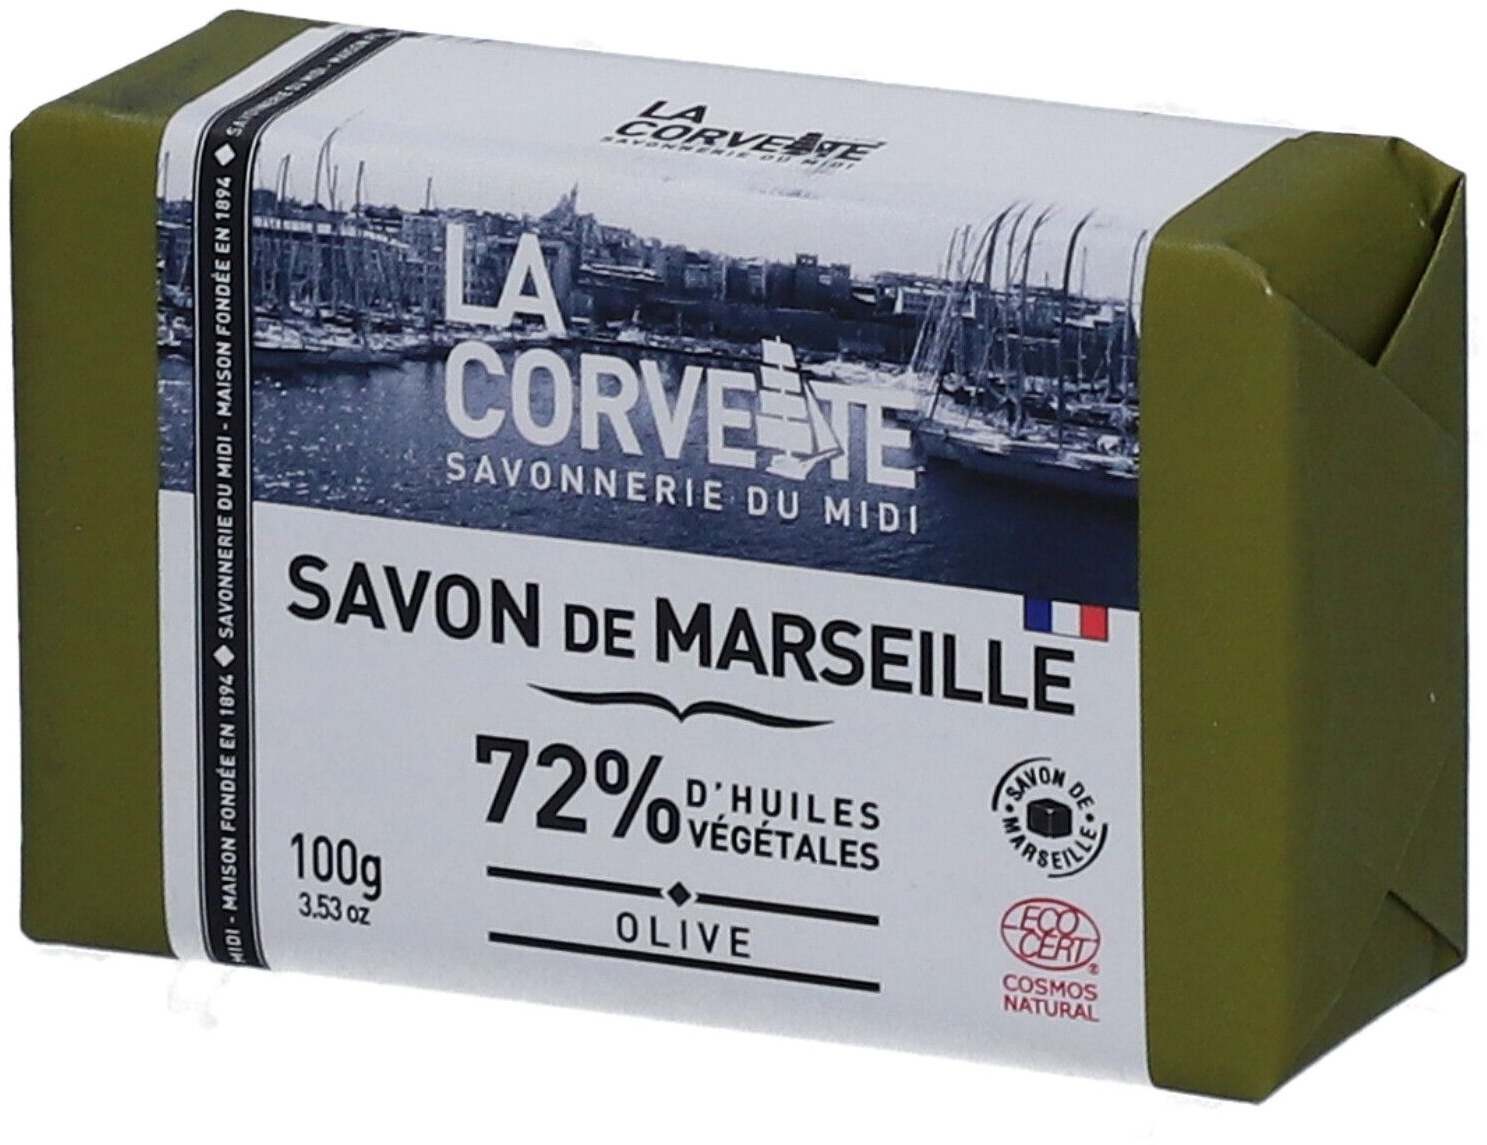 LA CORVETTE Savon de Marseille Olive 100 g savon